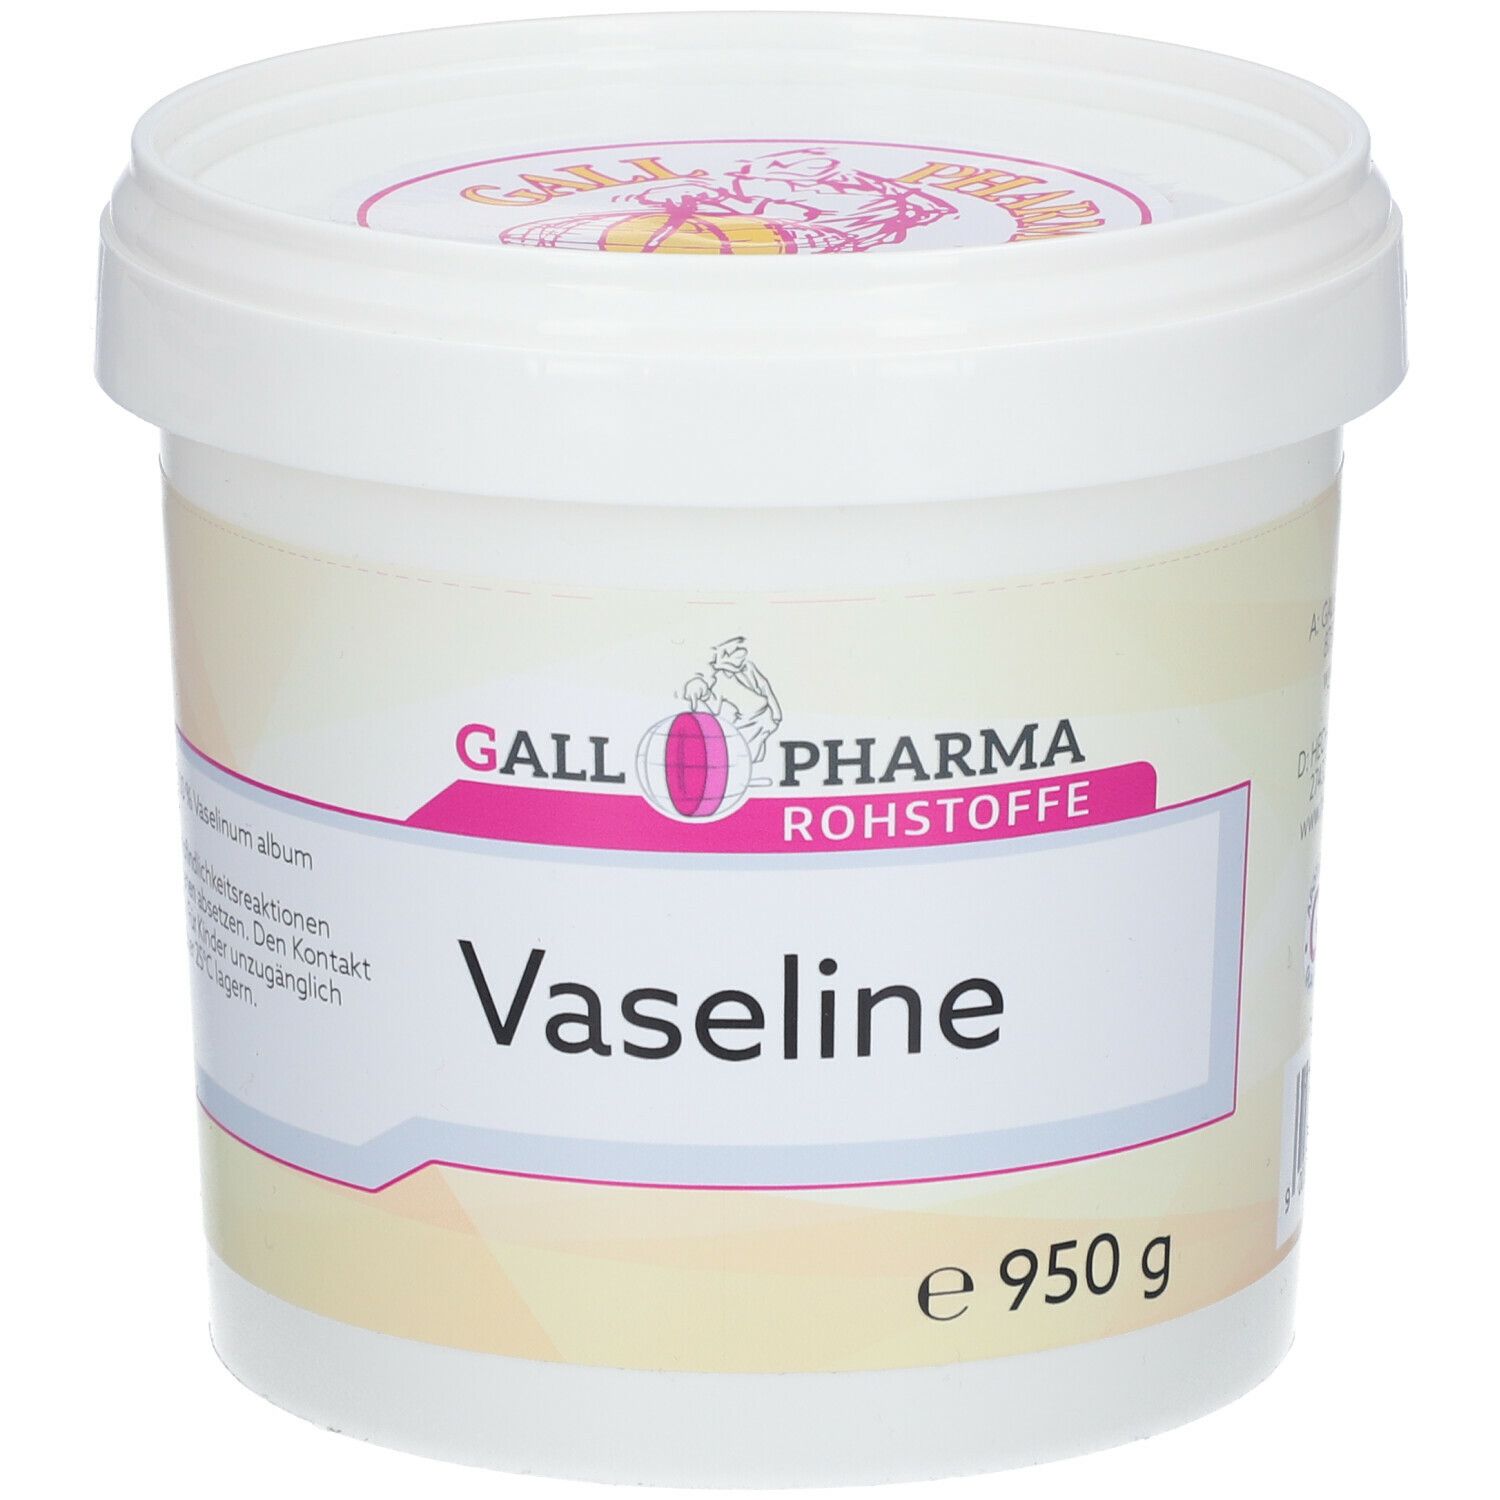 Gall Pharma Vaseline